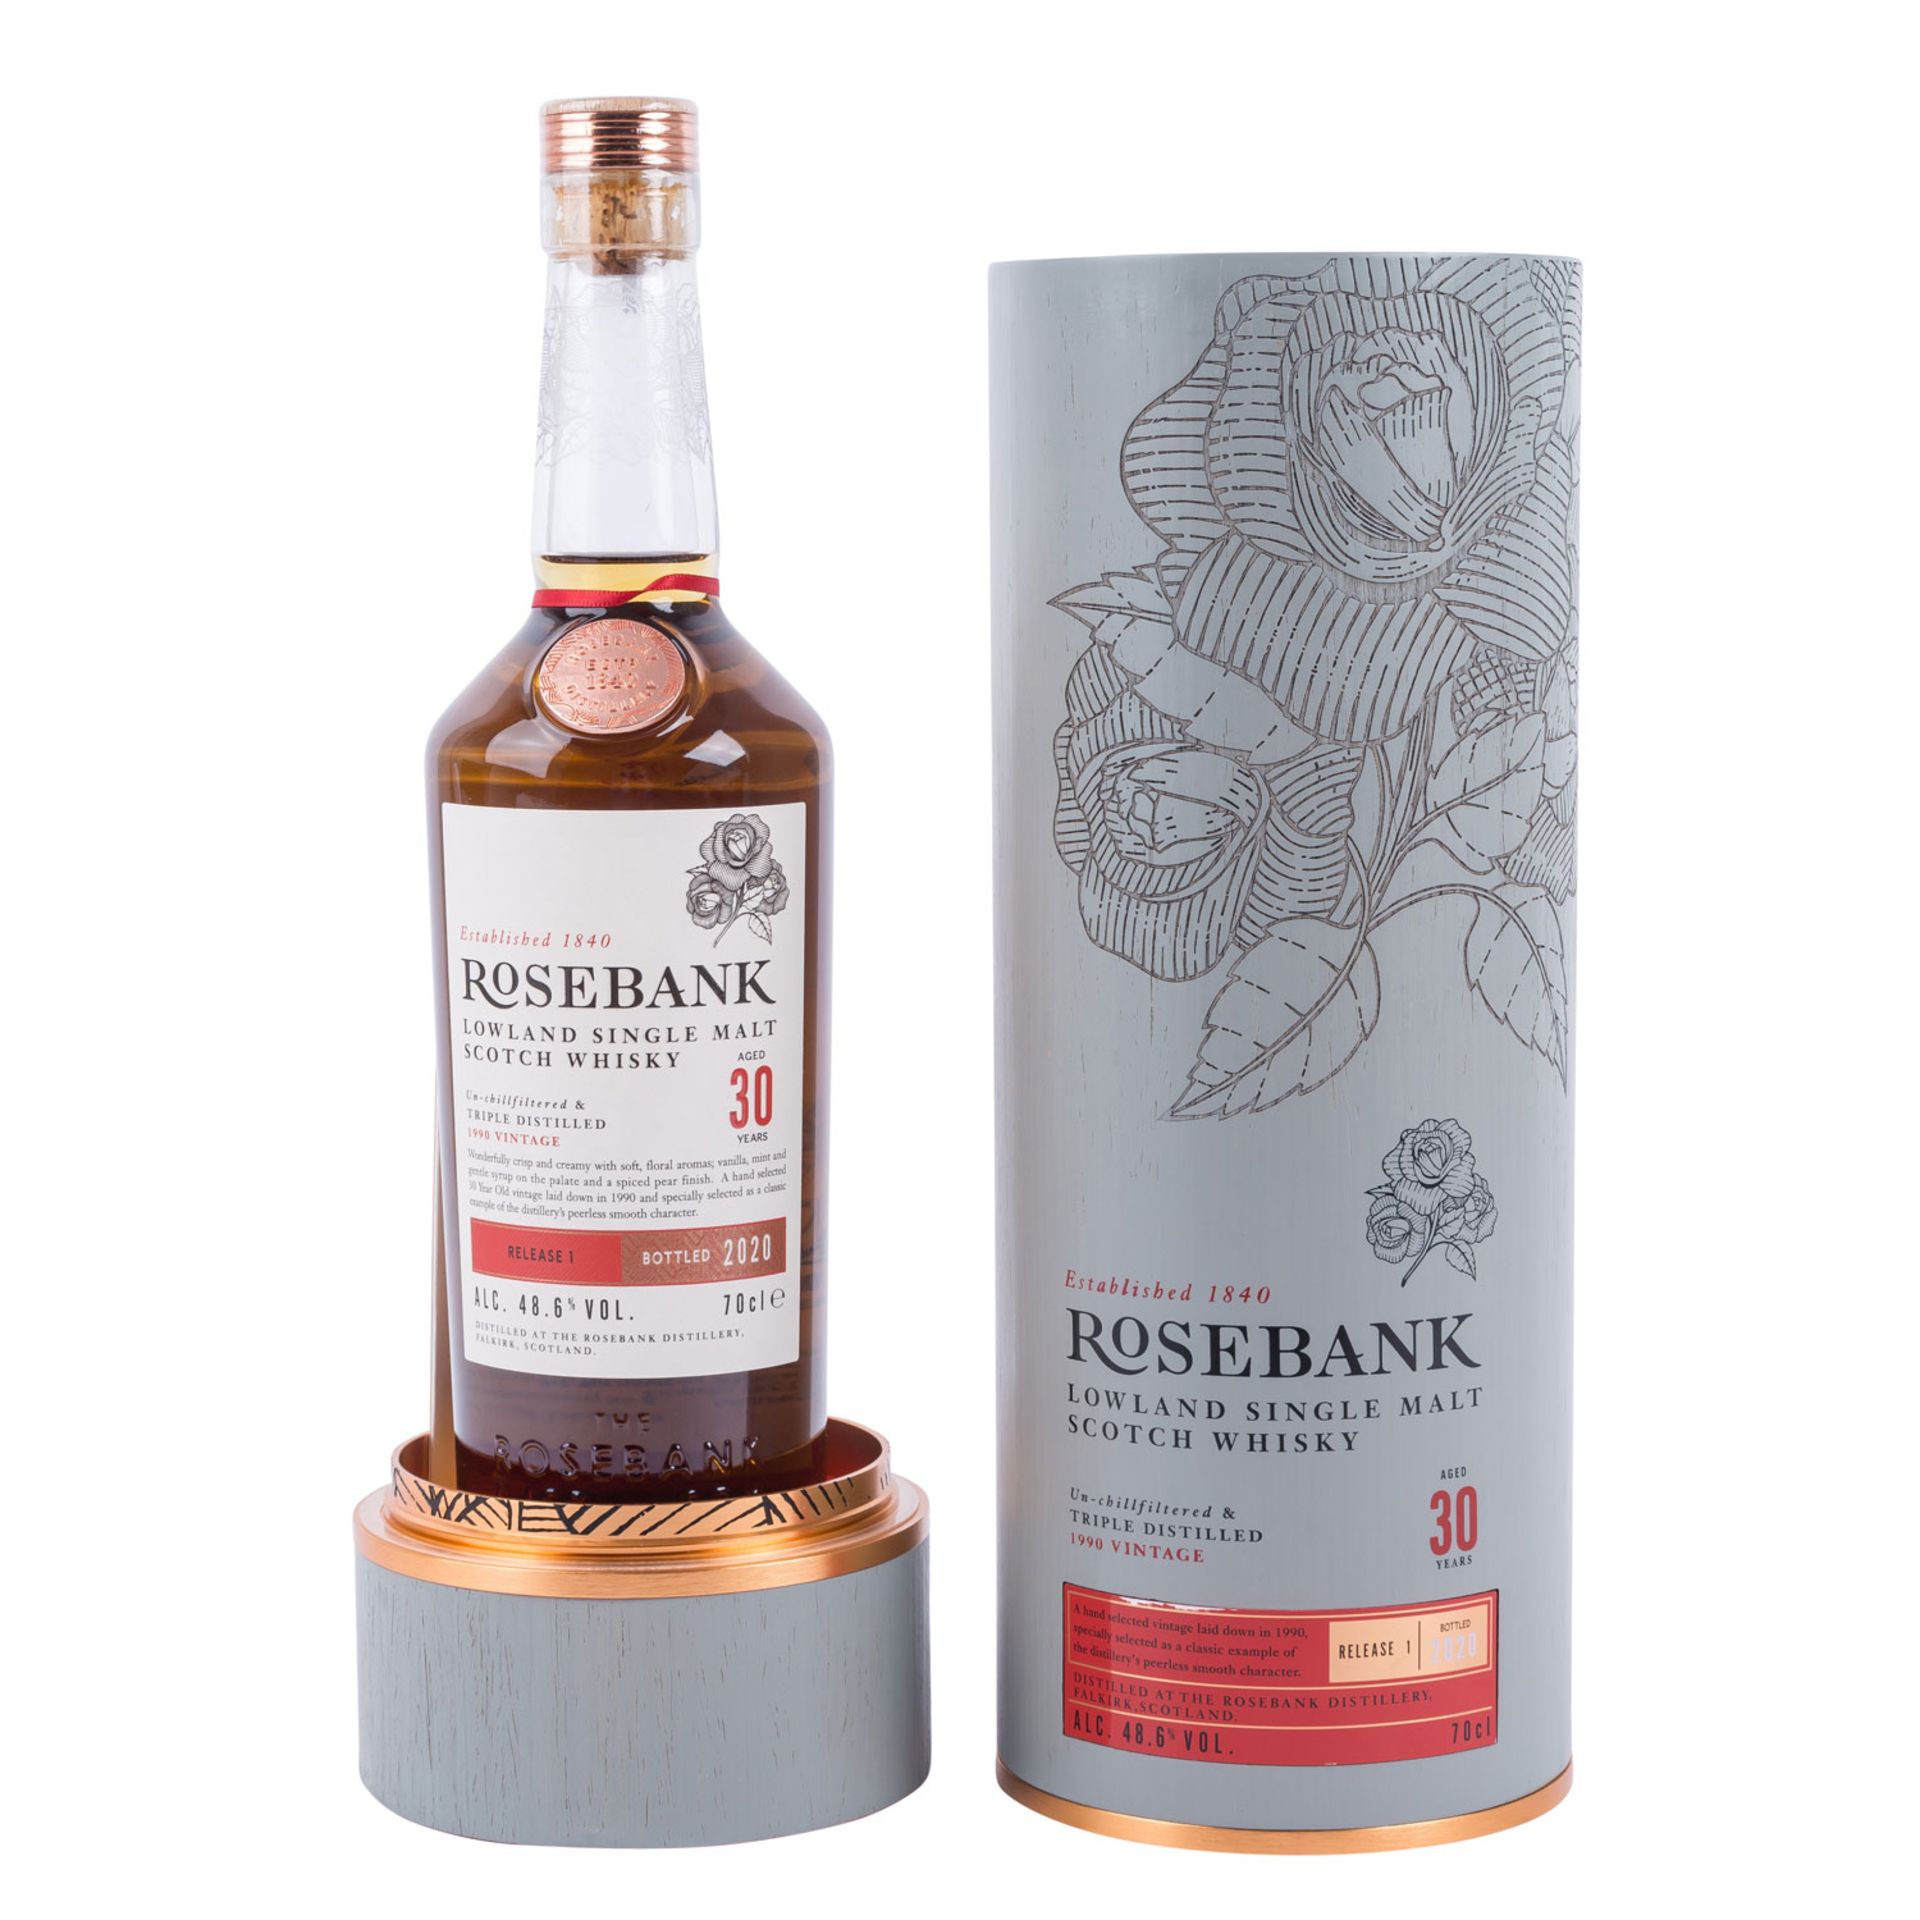 ROSEBANK 'Lowland Single Malt Scotch Whisky 'Aged 30 Years' 1990 - Image 2 of 4